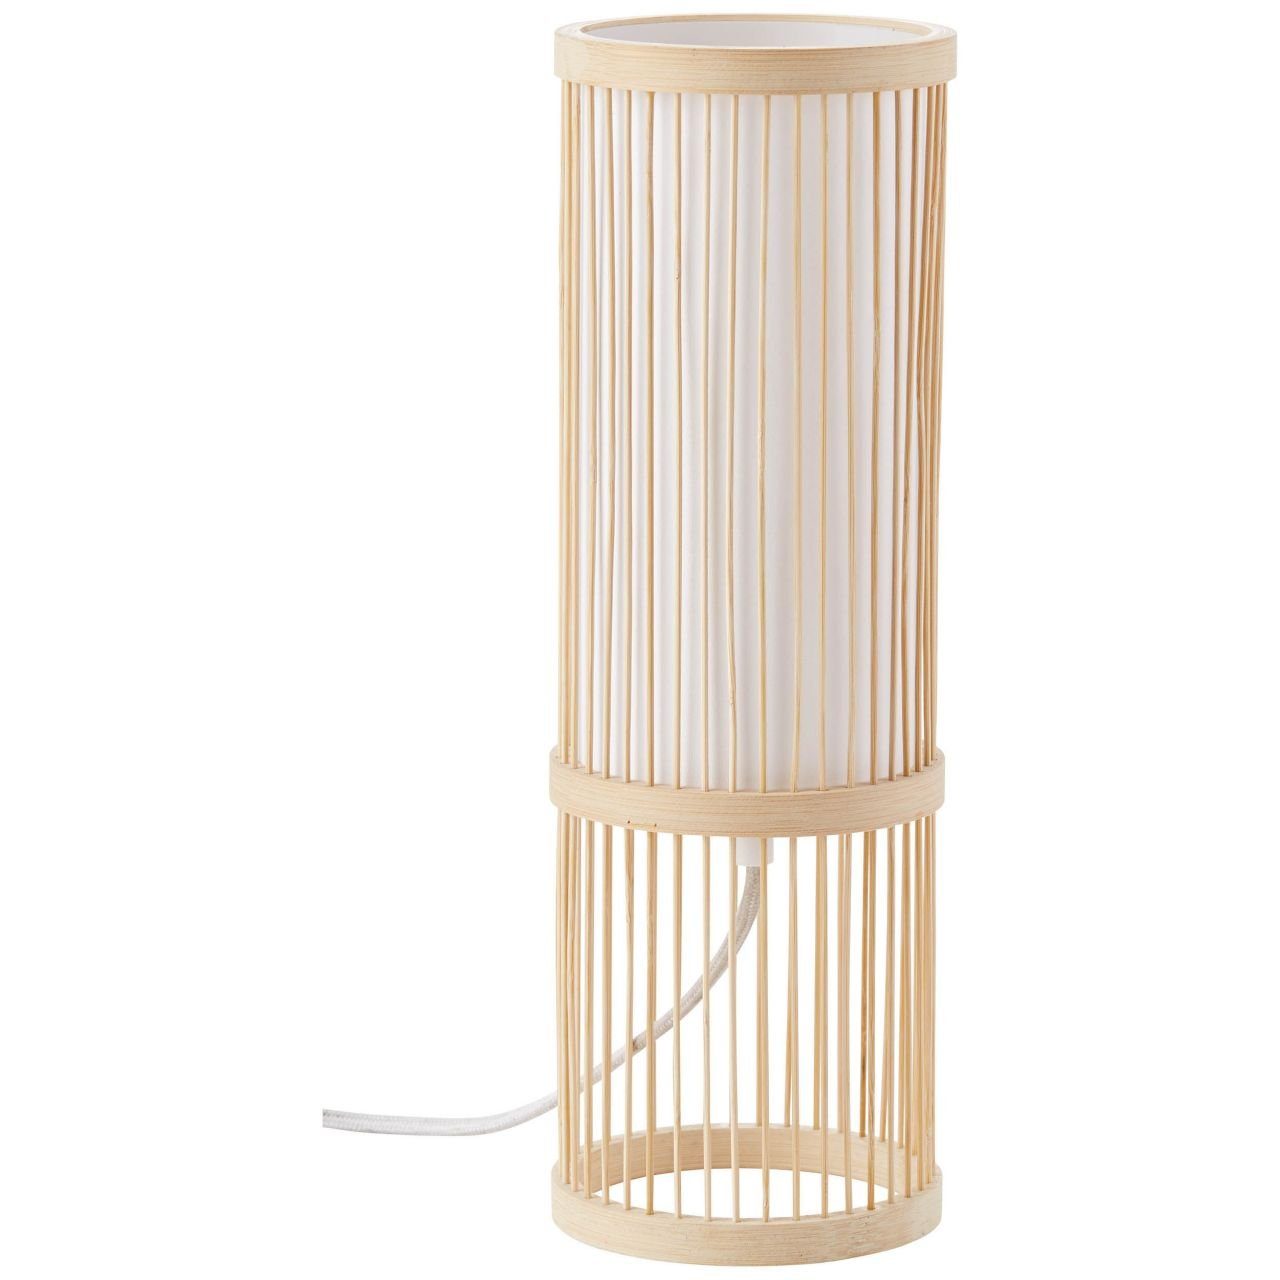 Tischleuchte 1x g.f. E27, Nori Nori, Brilliant natur/weiß A60, 40W, Lampe Normallamp Tischleuchte